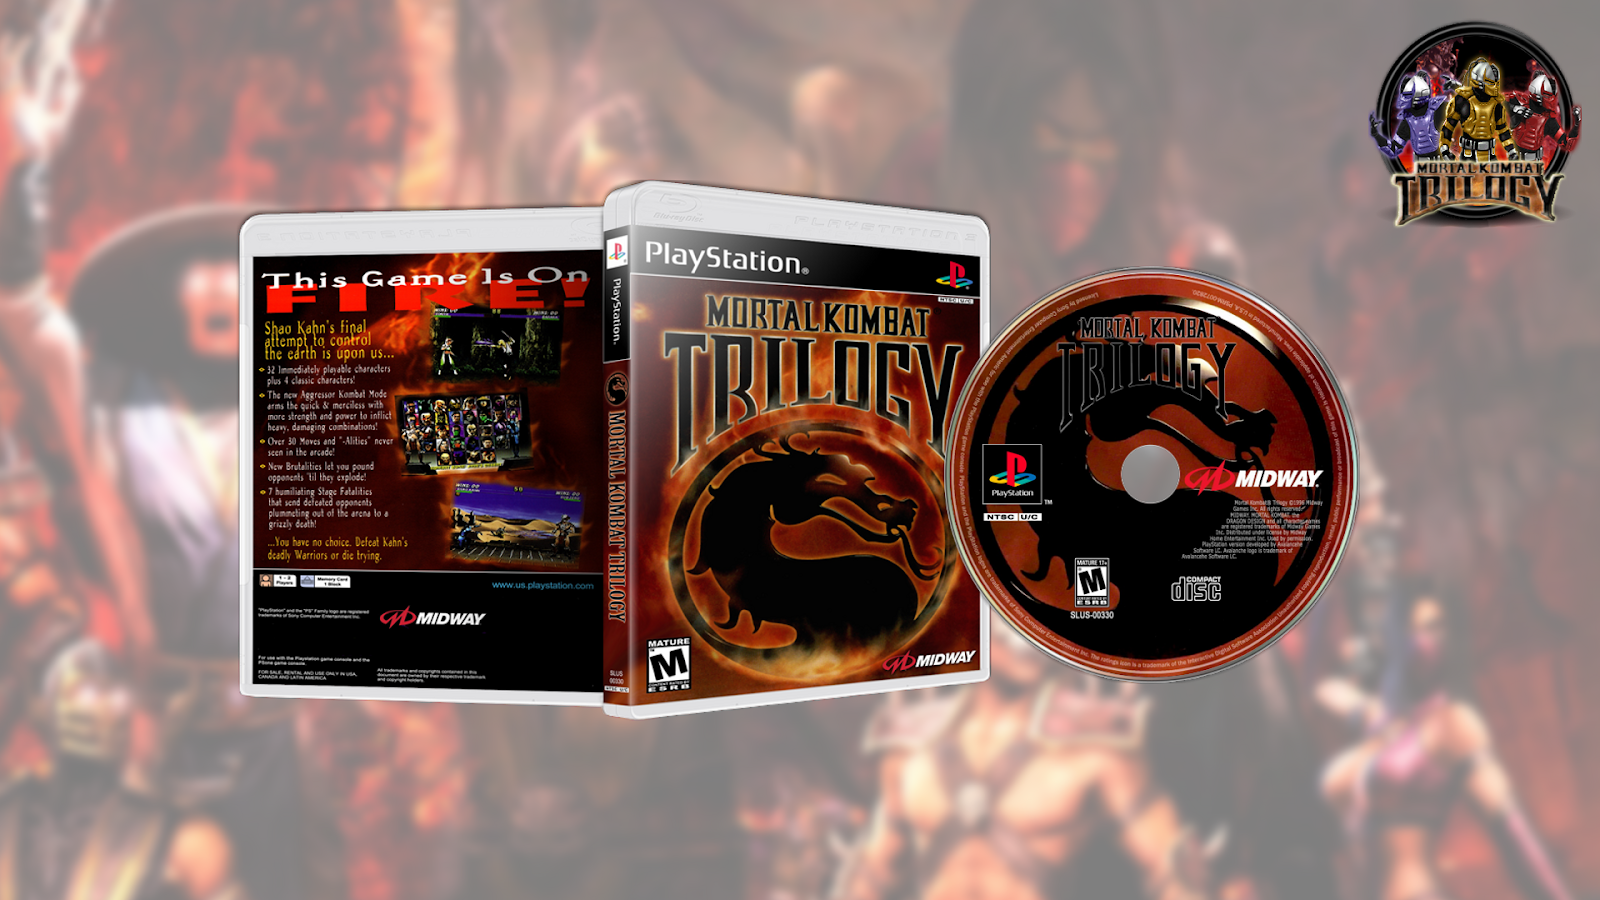 Мортал игры трилогия. Mortal Kombat Trilogy ps1. Mortal Kombat Trilogy ps1 обложка. Mortal Kombat 3 ps1. Коды мортал комбат трилогия пс1.